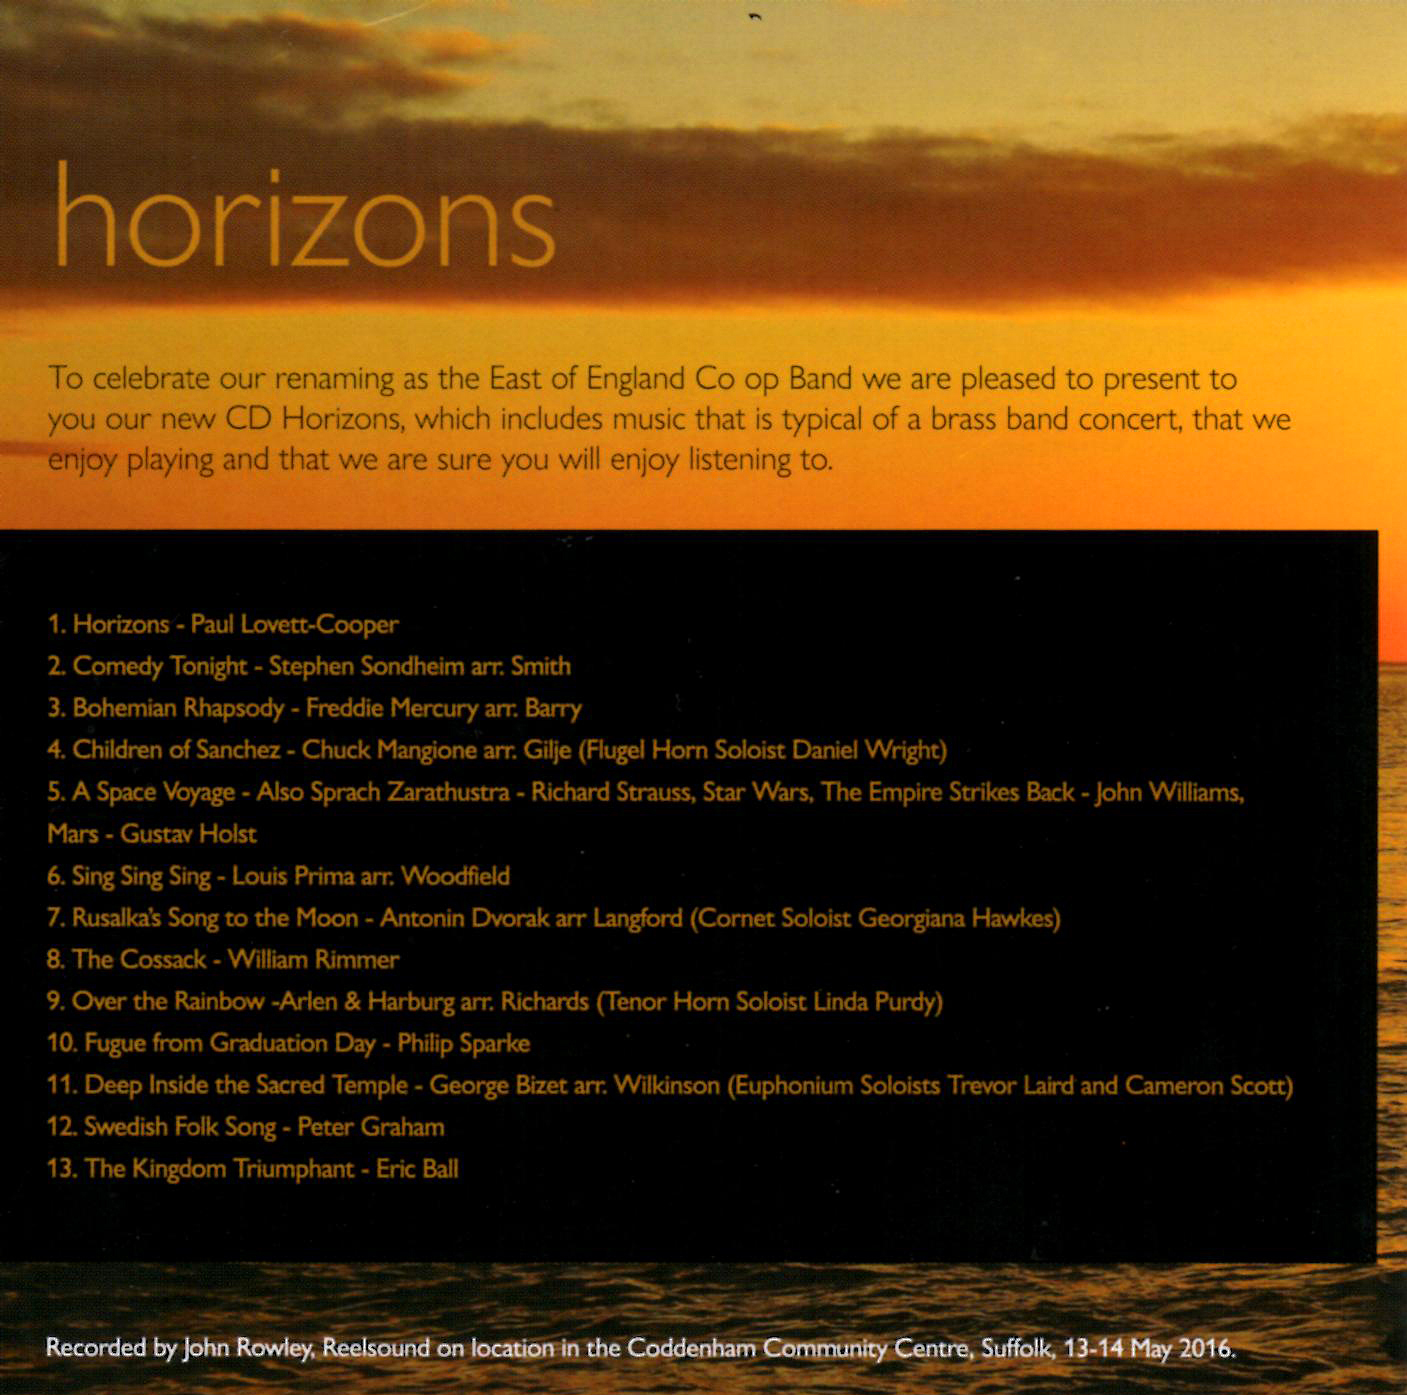 horizons-album-art-02